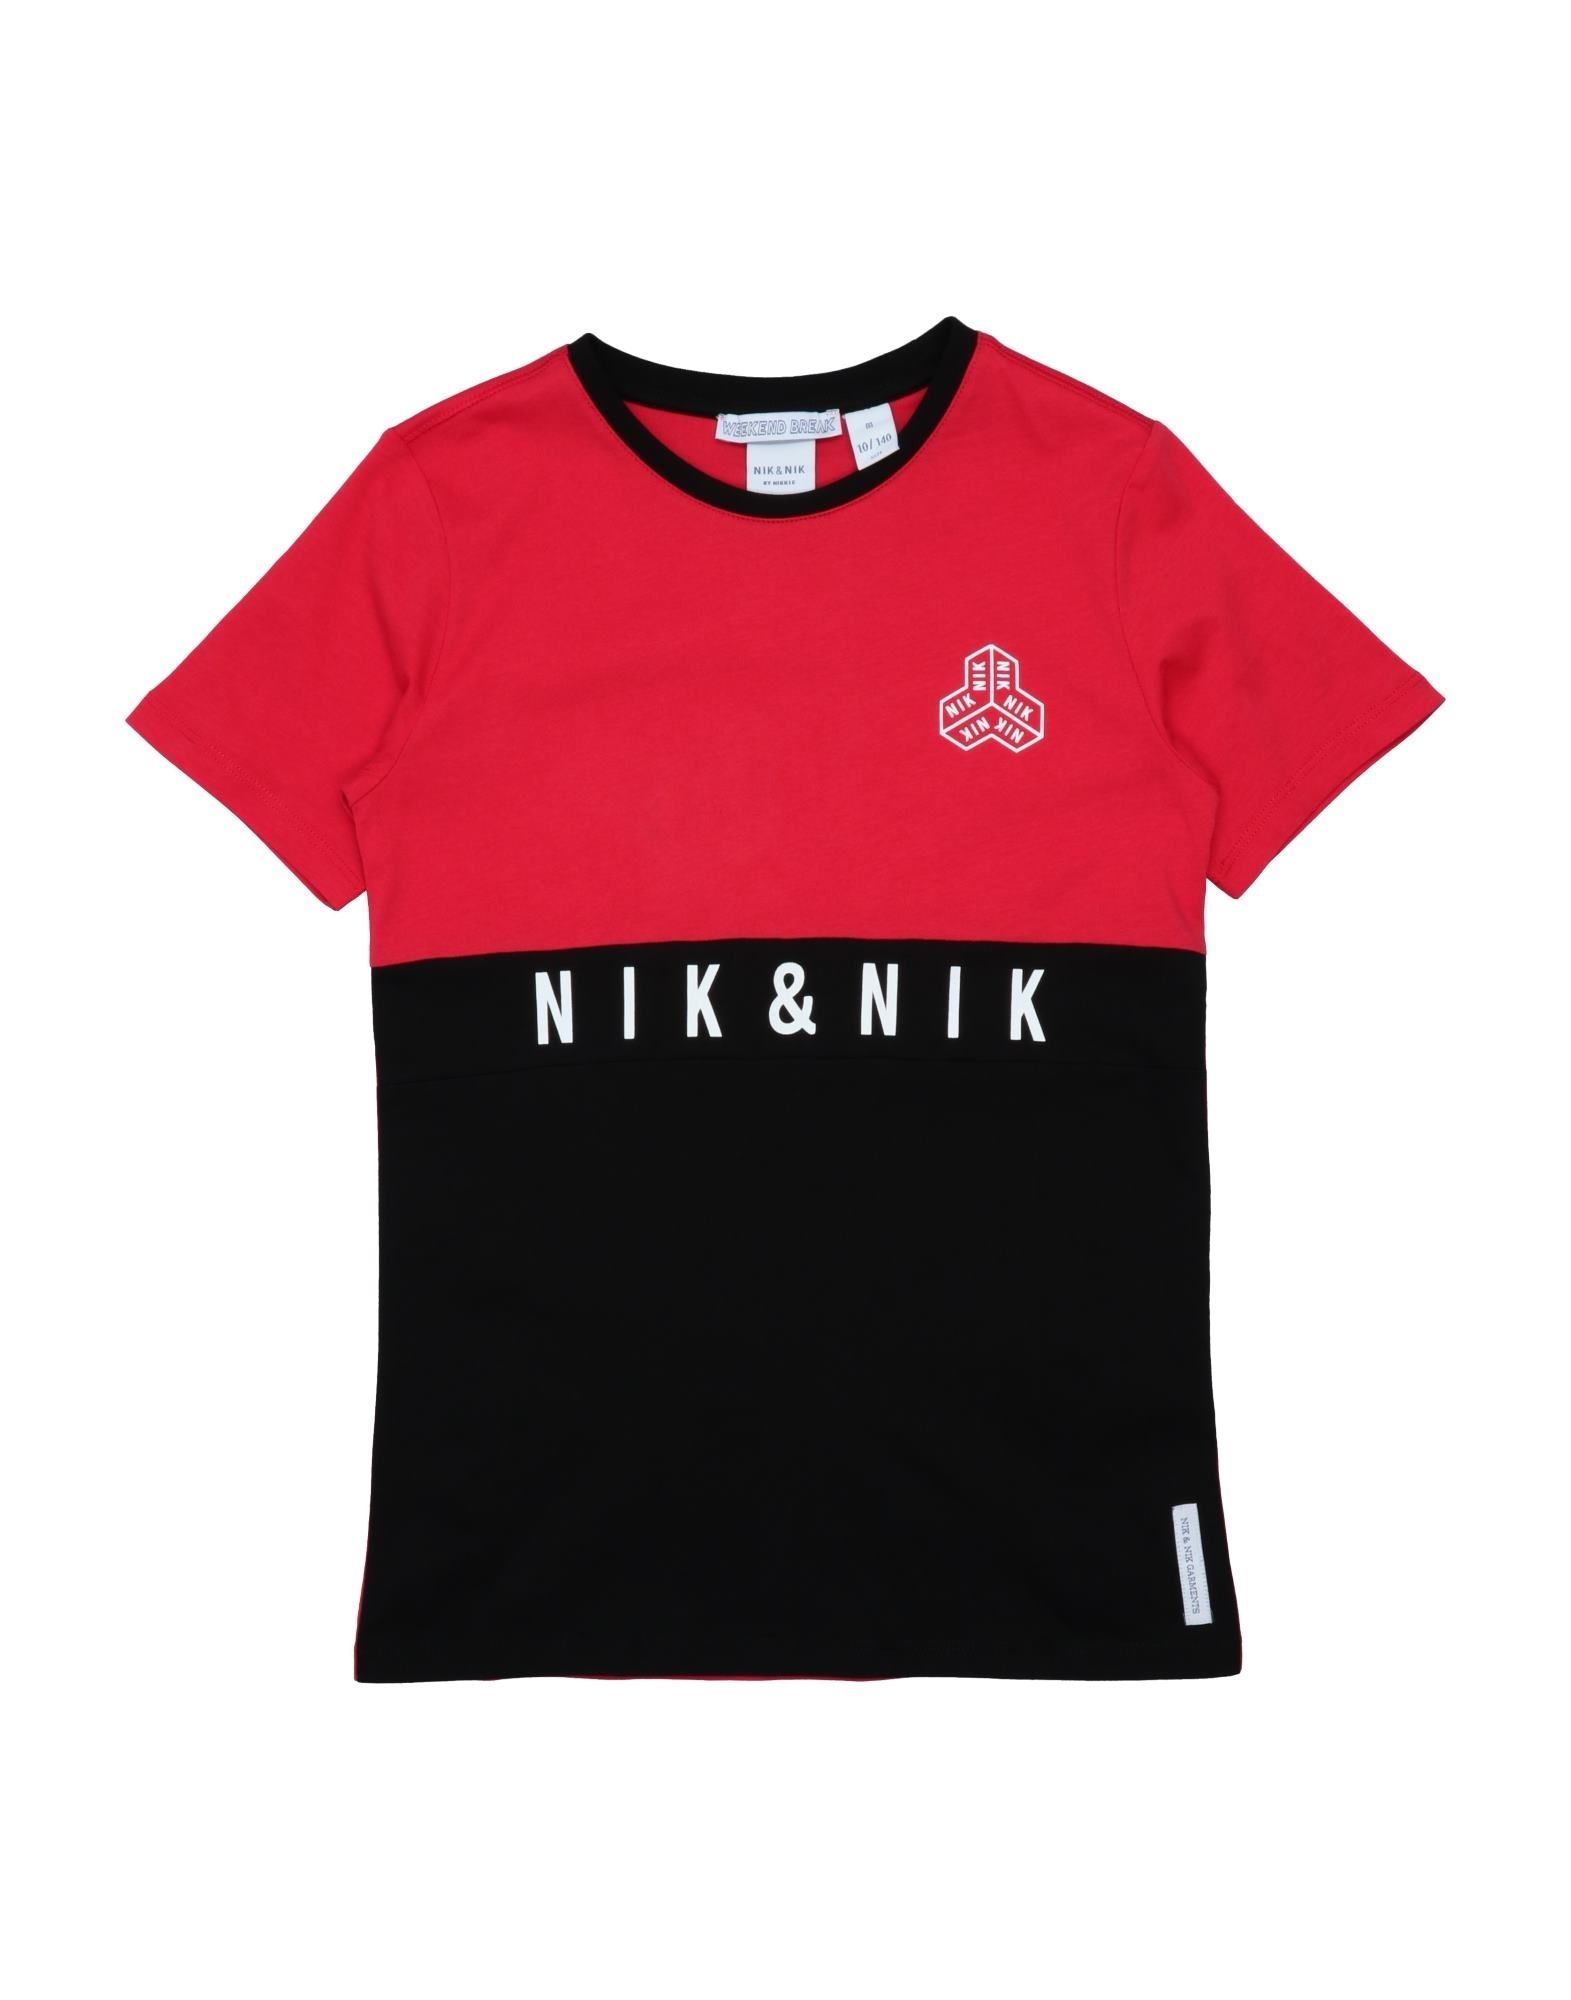 Nik & Nik Kids' T-shirts In Red